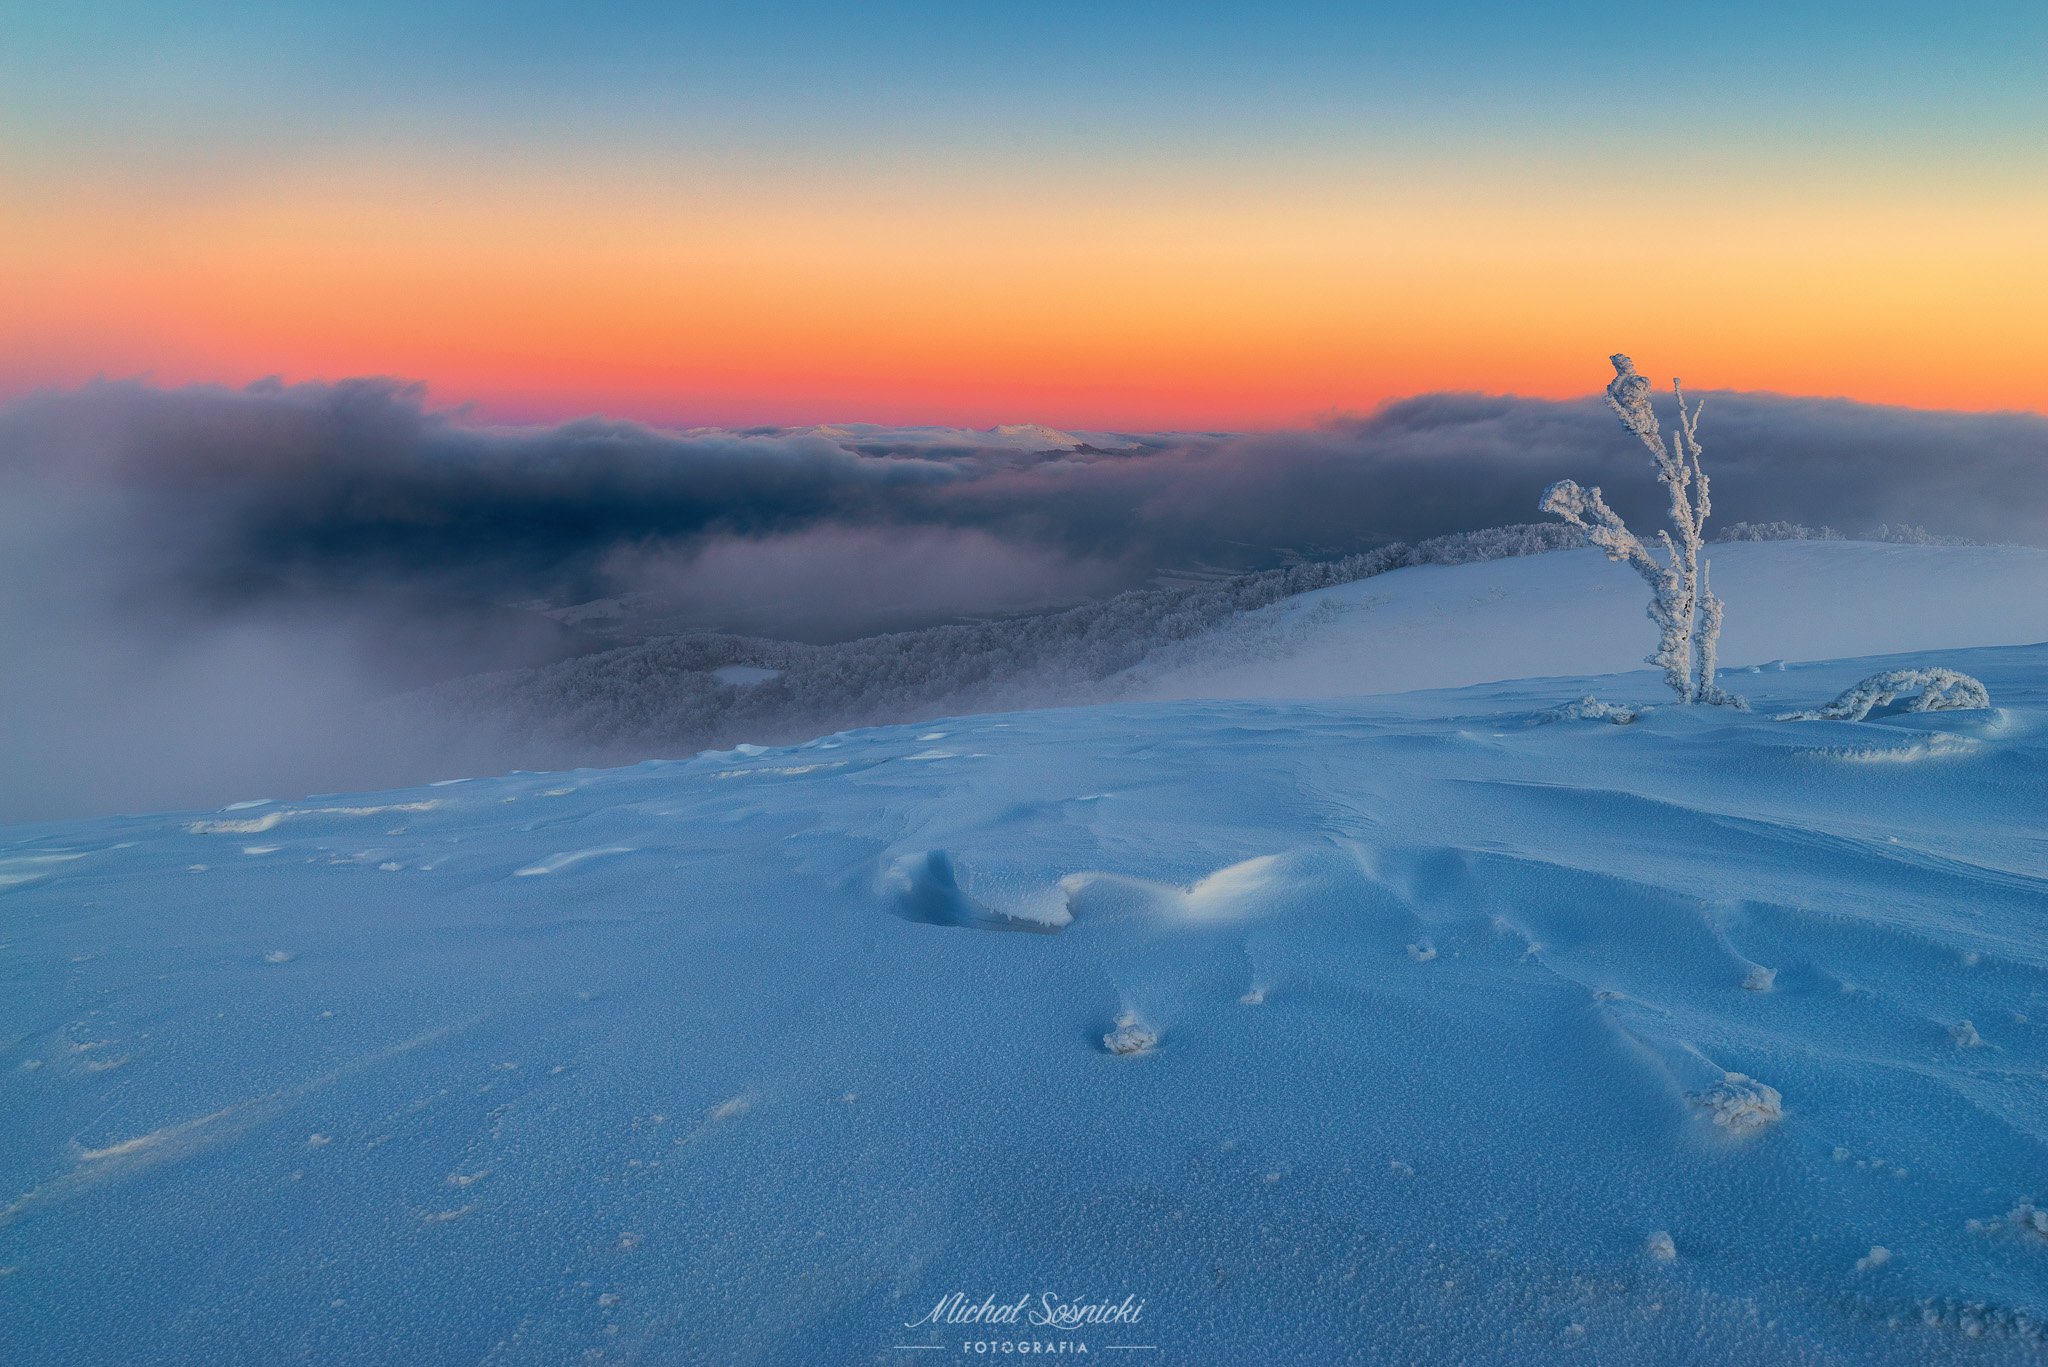 #mountains #bieszczady #winter #snow #photo #sky #poland #pentax #benro #benq, Michał Sośnicki